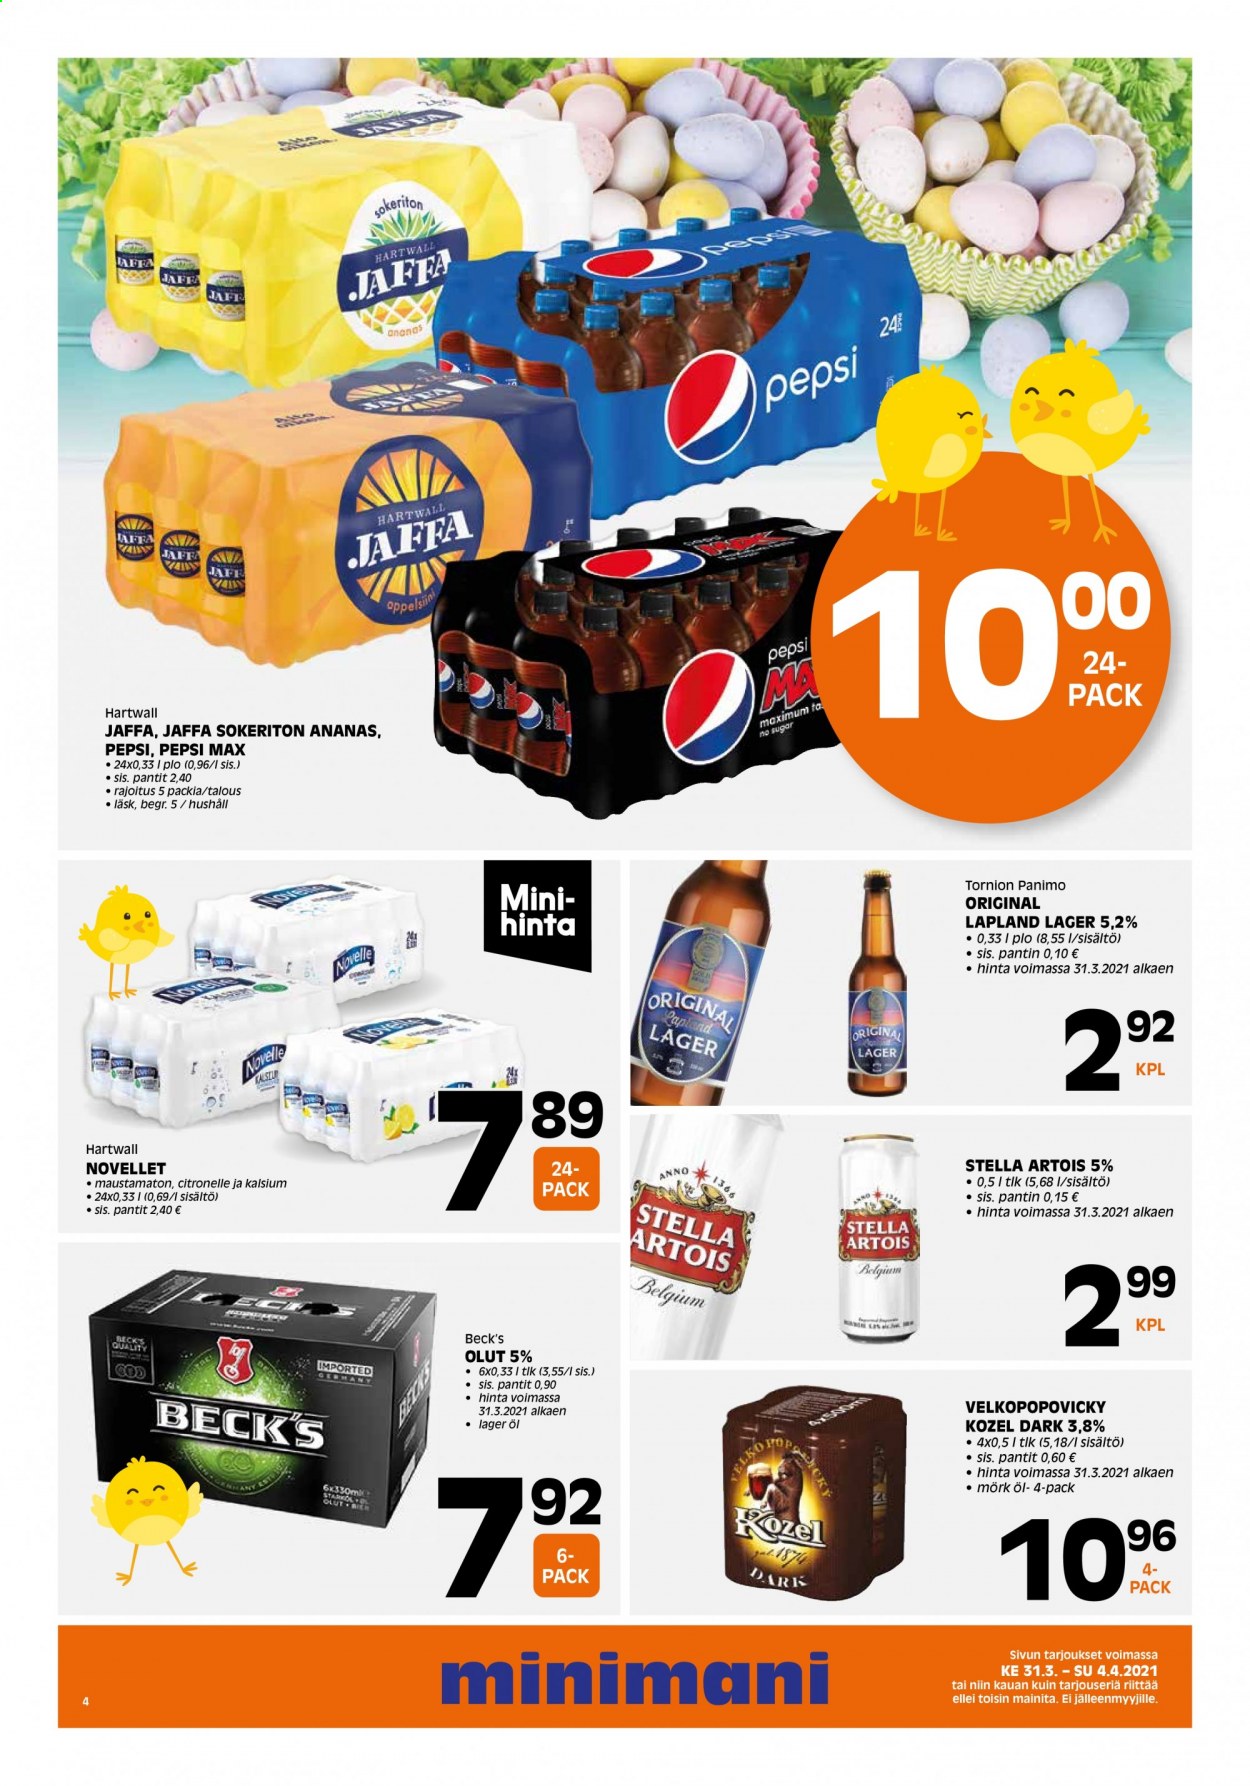 thumbnail - Minimani tarjoukset  - 31.03.2021 - 04.04.2021 - Tarjoustuotteet - Stella Artois, olut, Beck‘s, Tornion, Velkopopovicky Kozel, Lapland Lager, lager, Pepsi, Pepsi Max, Jaffa. Sivu 4.